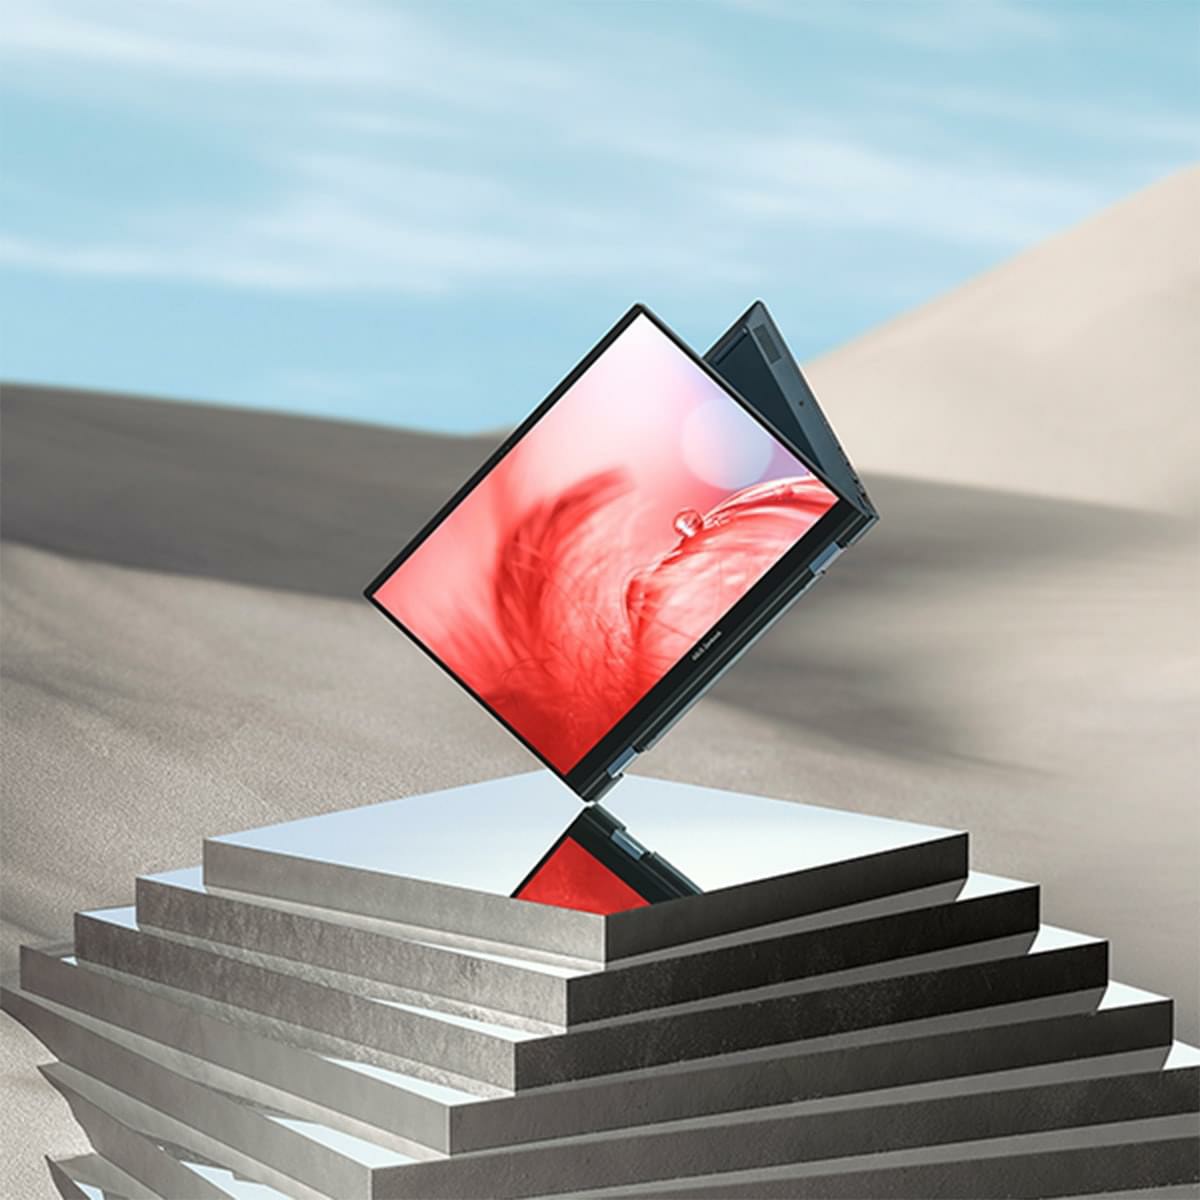 Một chiếc Zenbook 14 Flip OLED ở chế độ Đứng, được đặt trên một bệ gương phản chiếu với màn hình có hình chiếc lông chim màu đỏ sống động.